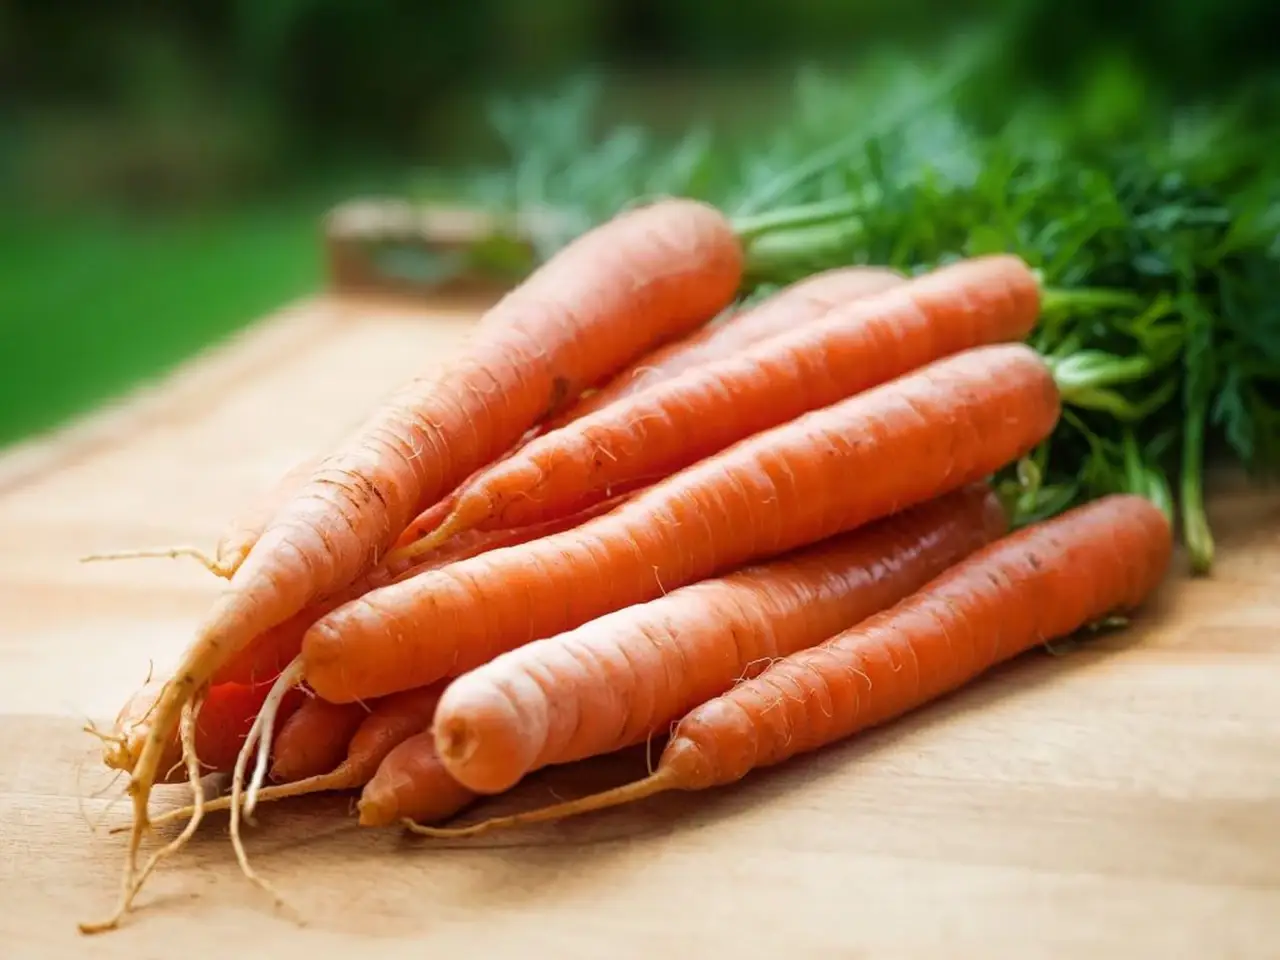 Carrots or gajar